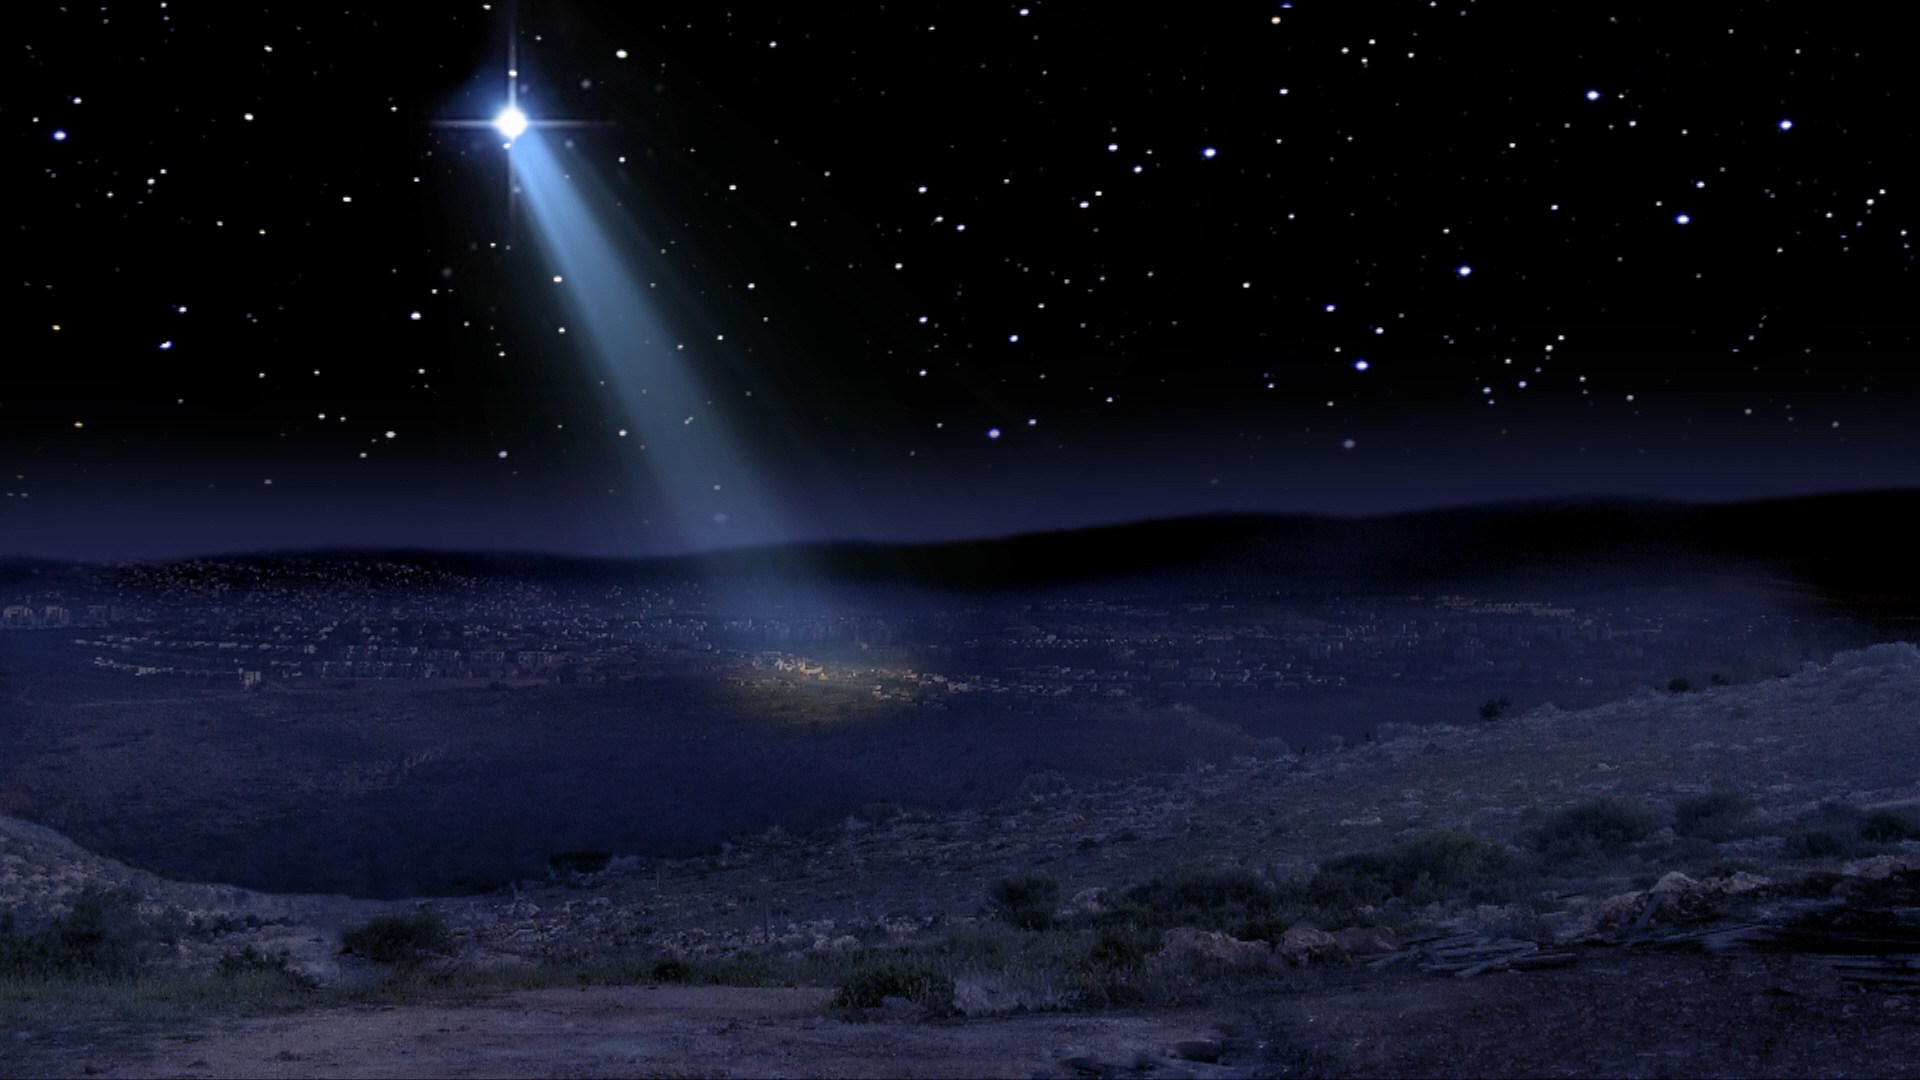 Яркая звезда путь трудный освещает. Вифлеемская звезда Вифлеем. Звезда Вифлеема. Рождество звезда Вифлеема. The Star of Bethlehem – звезда Вифлеема.